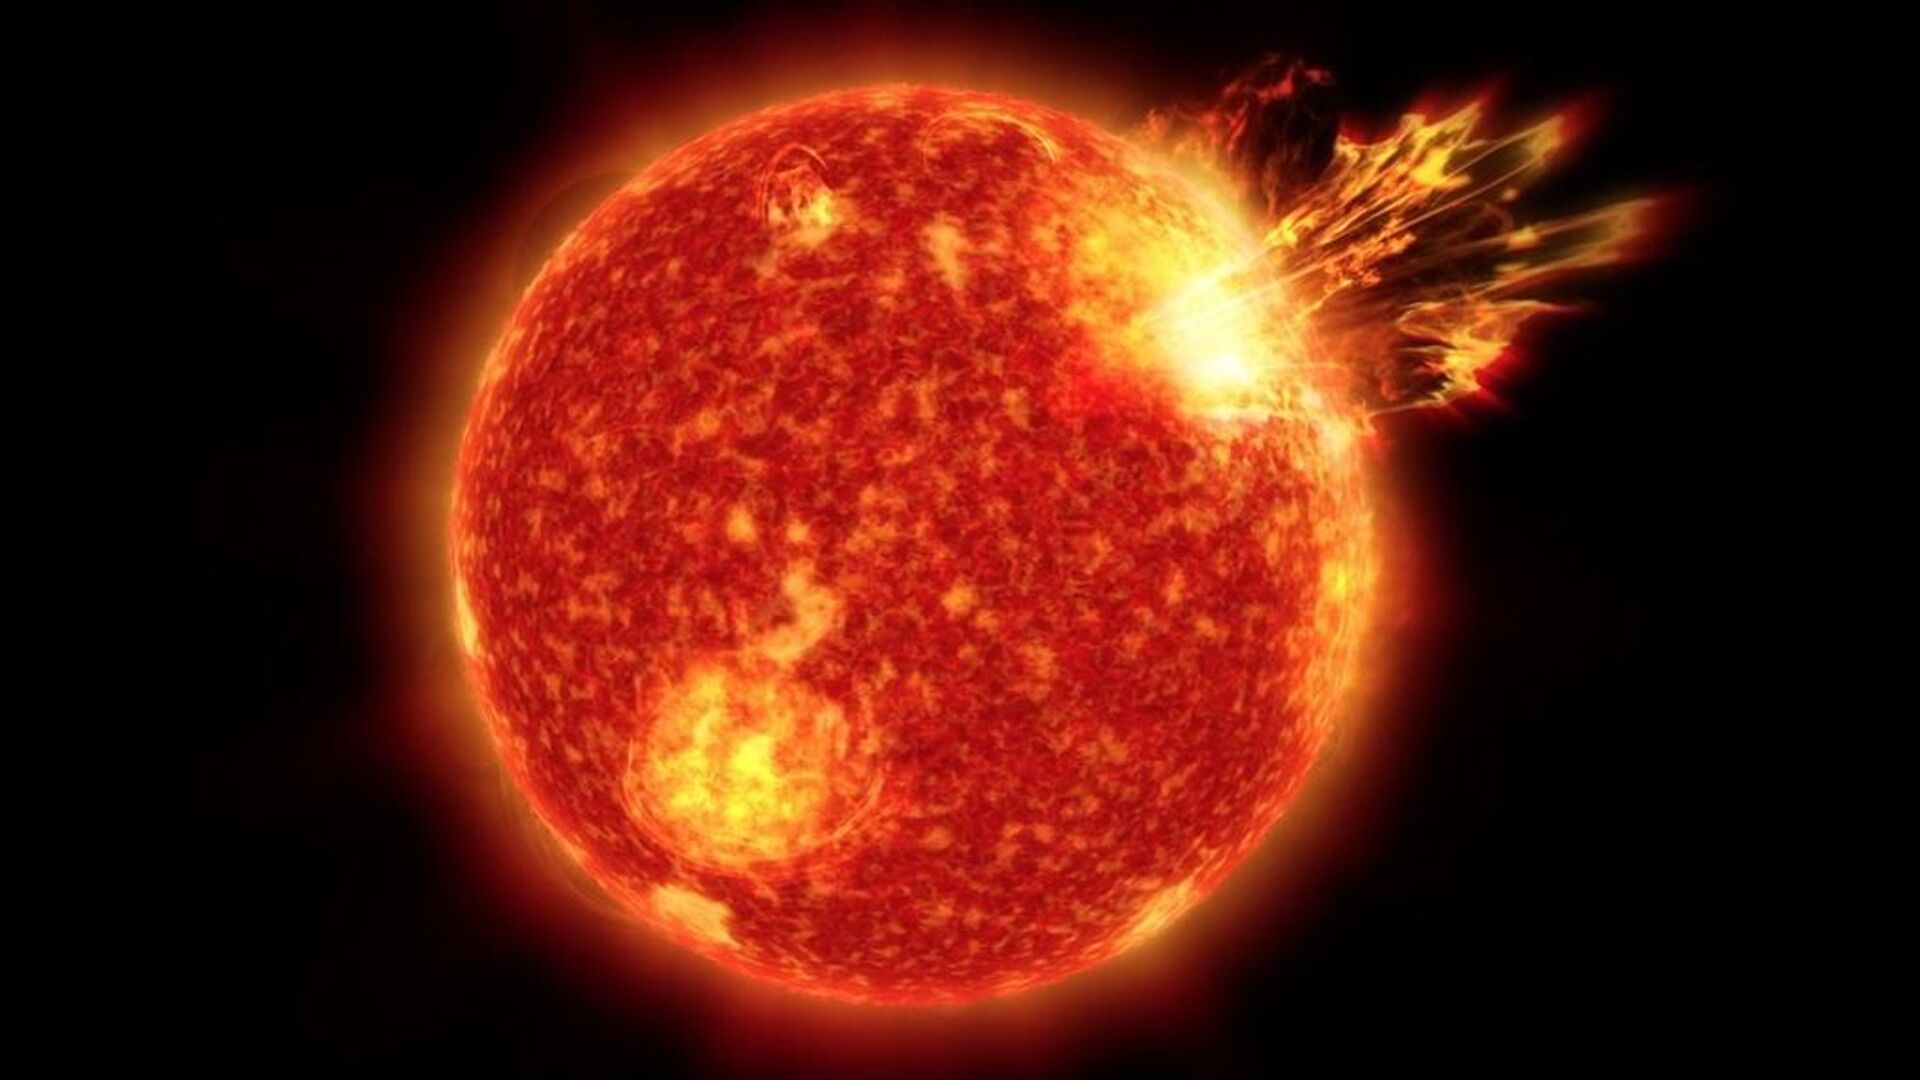 NASA descobre estela a 30 anos-luz que parece 'versão jovem' do Sol (FOTO) - Sputnik Brasil, 1920, 06.08.2021